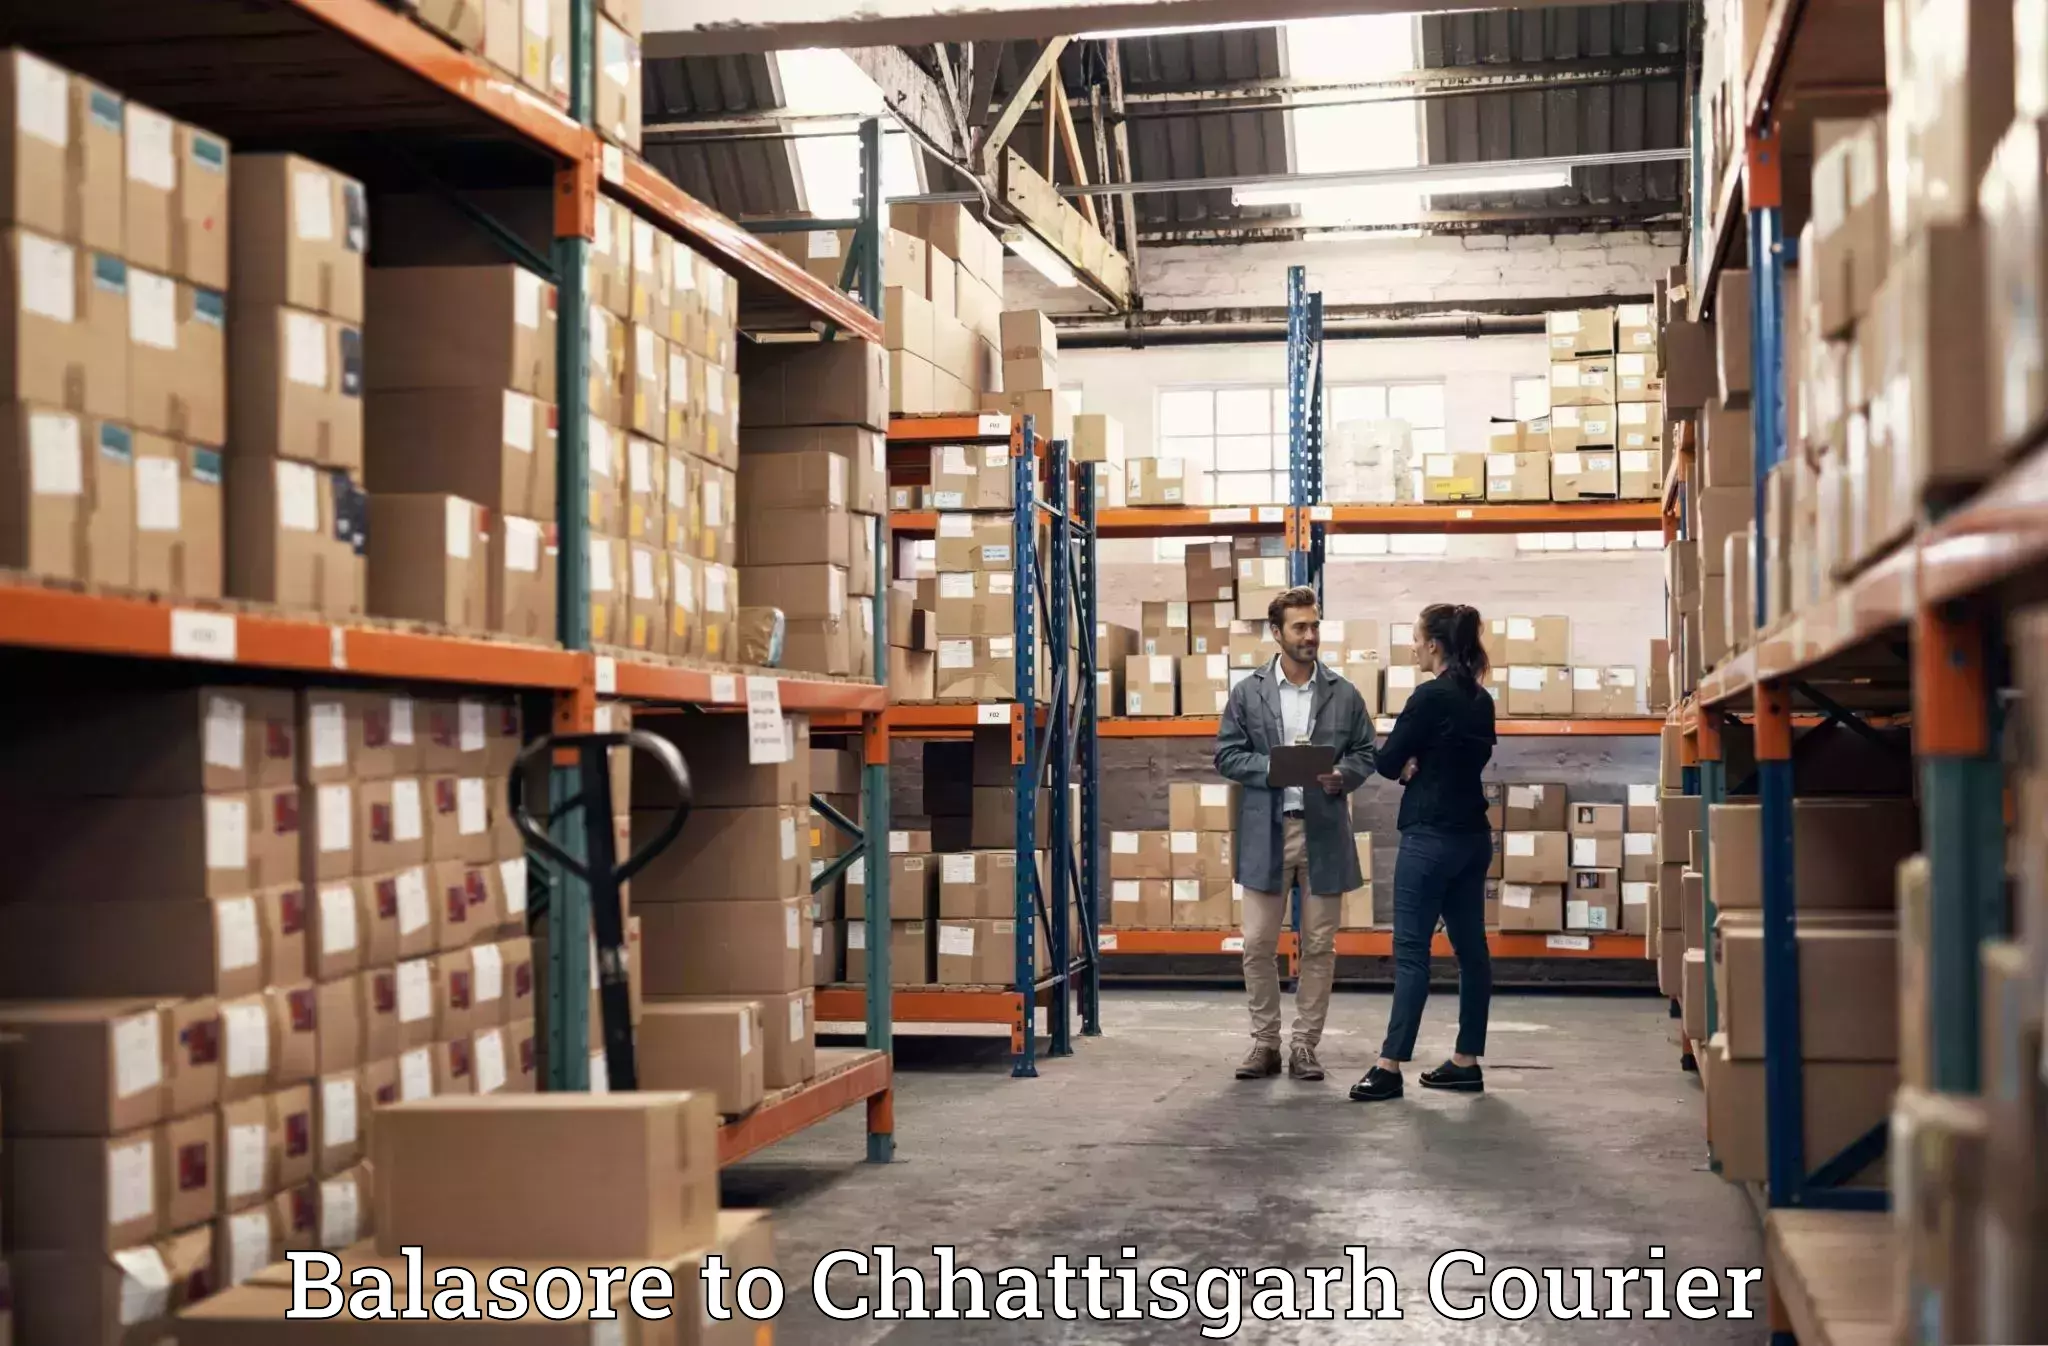 Expert packing and moving Balasore to Raigarh Chhattisgarh